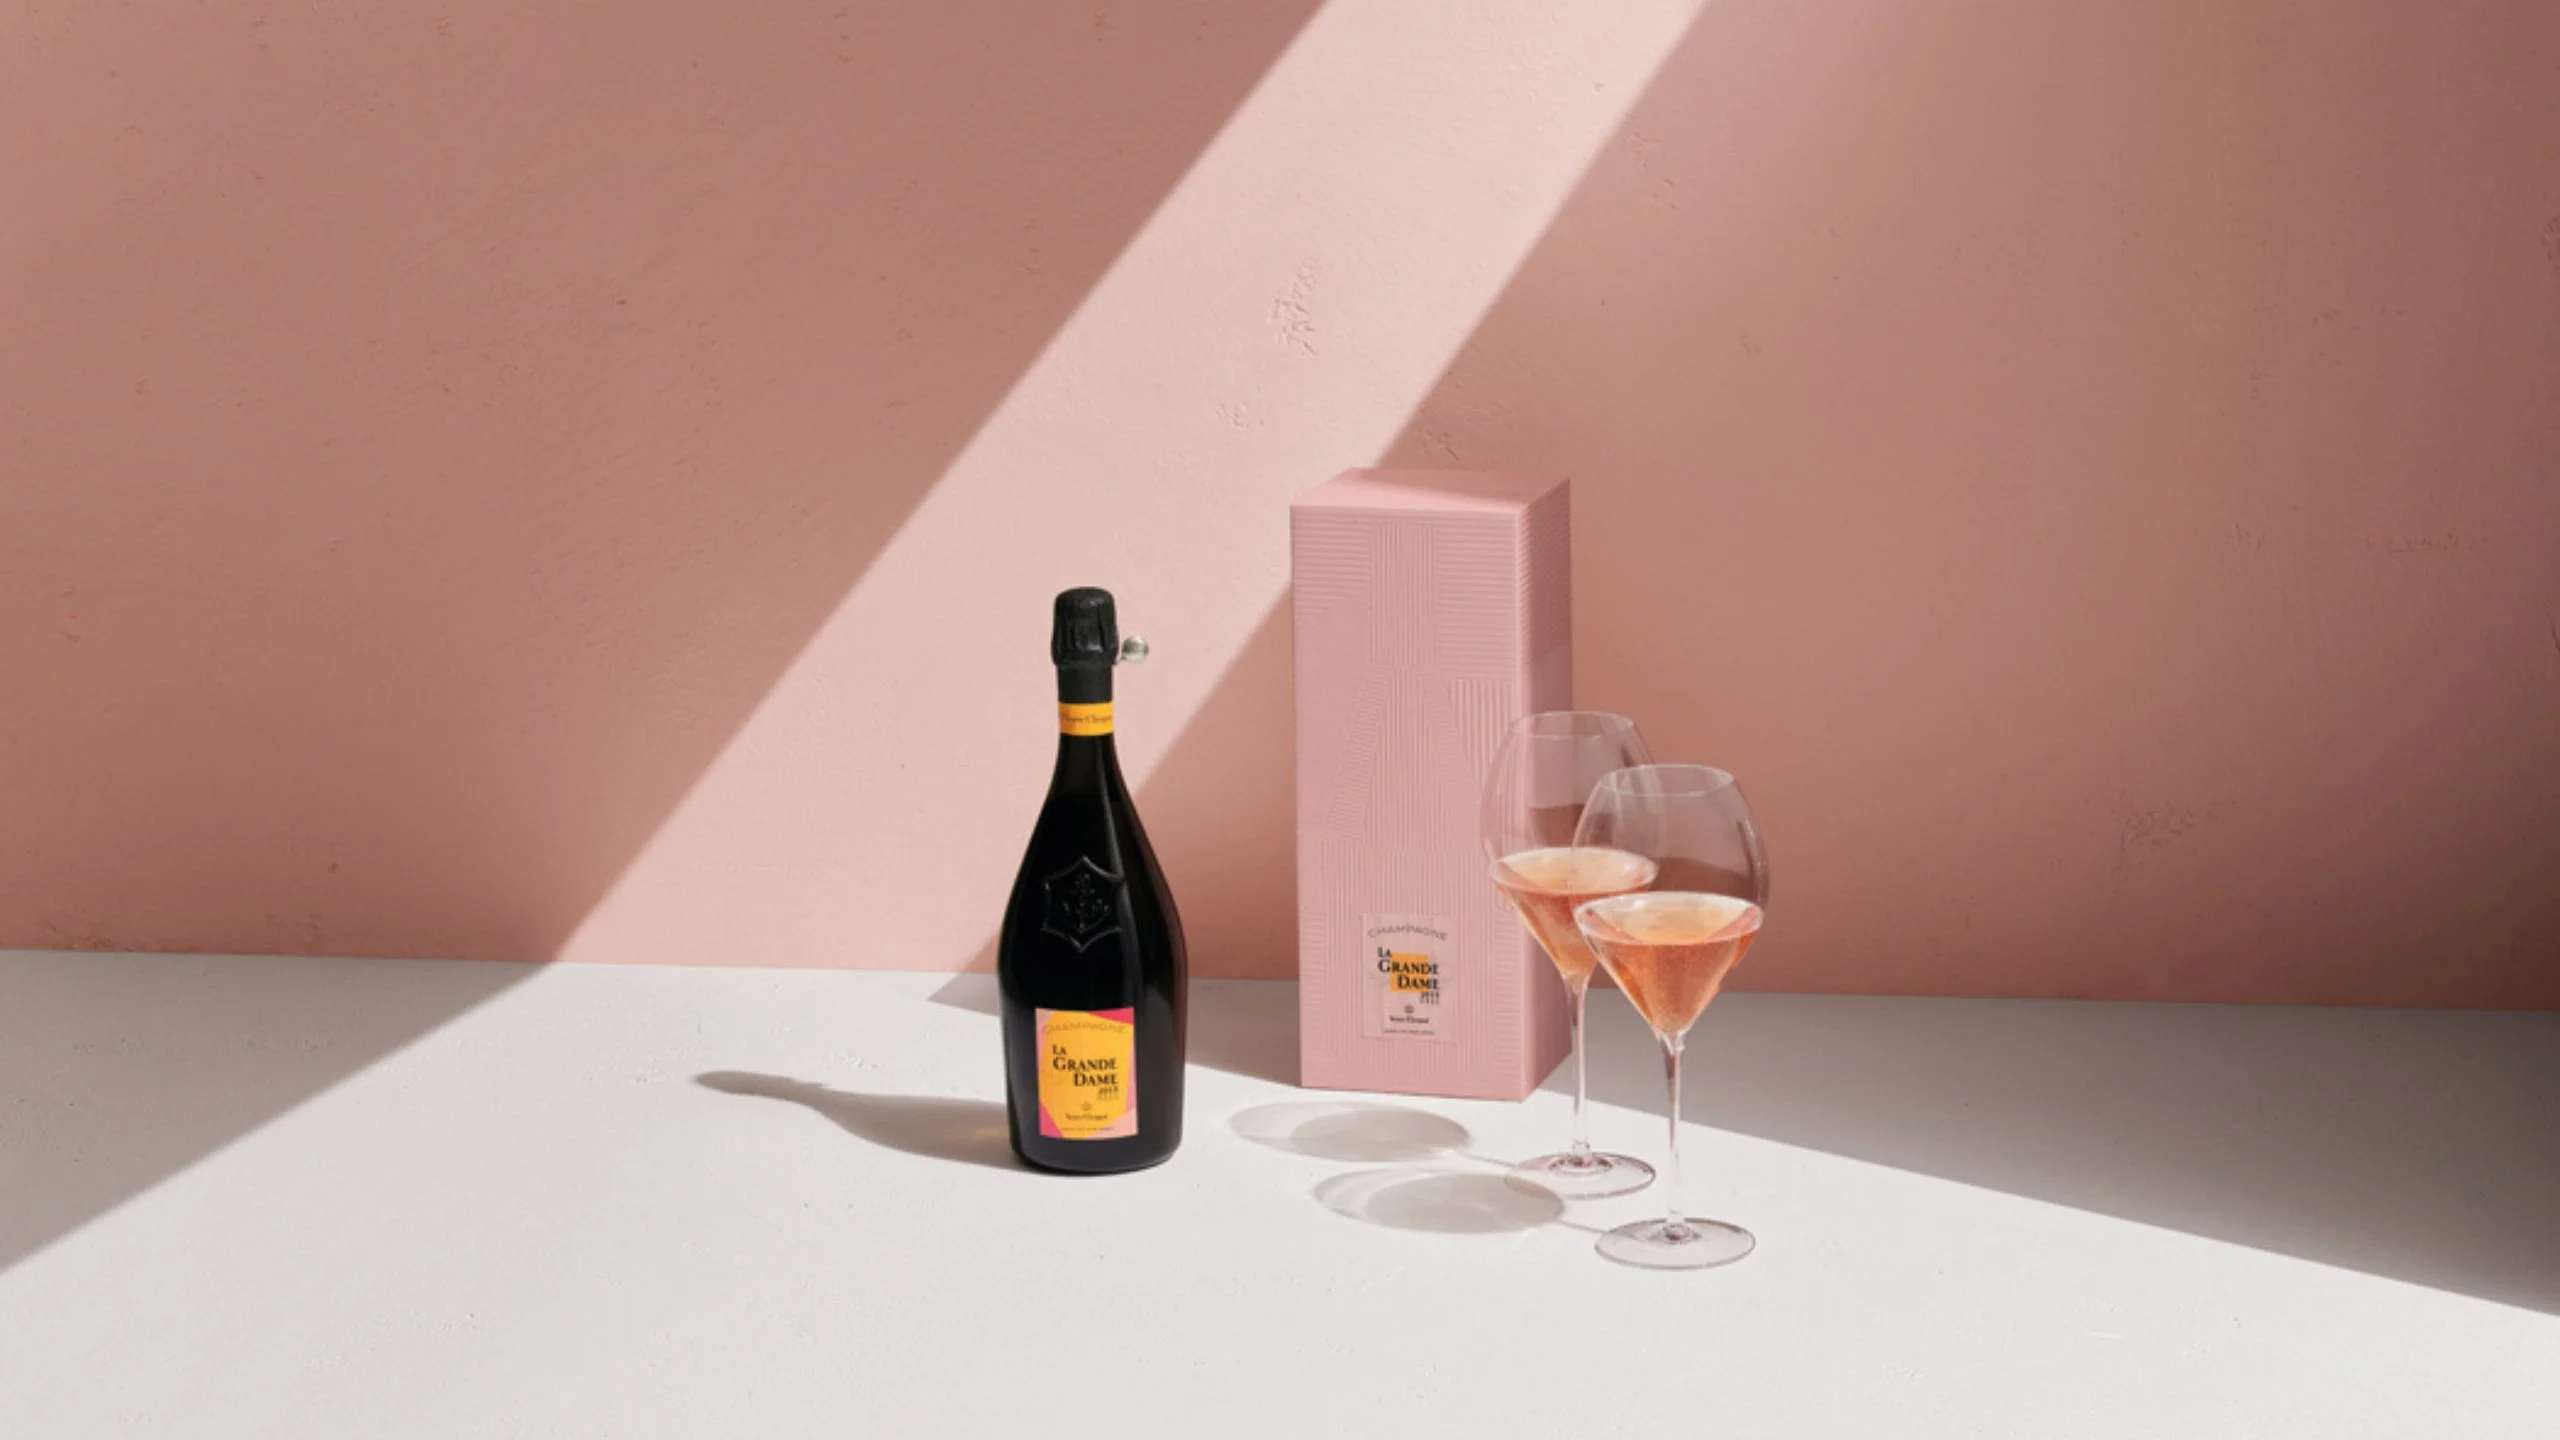 Lo nuevo de Veuve Clicquot: La Grande Dame Rosé 2015